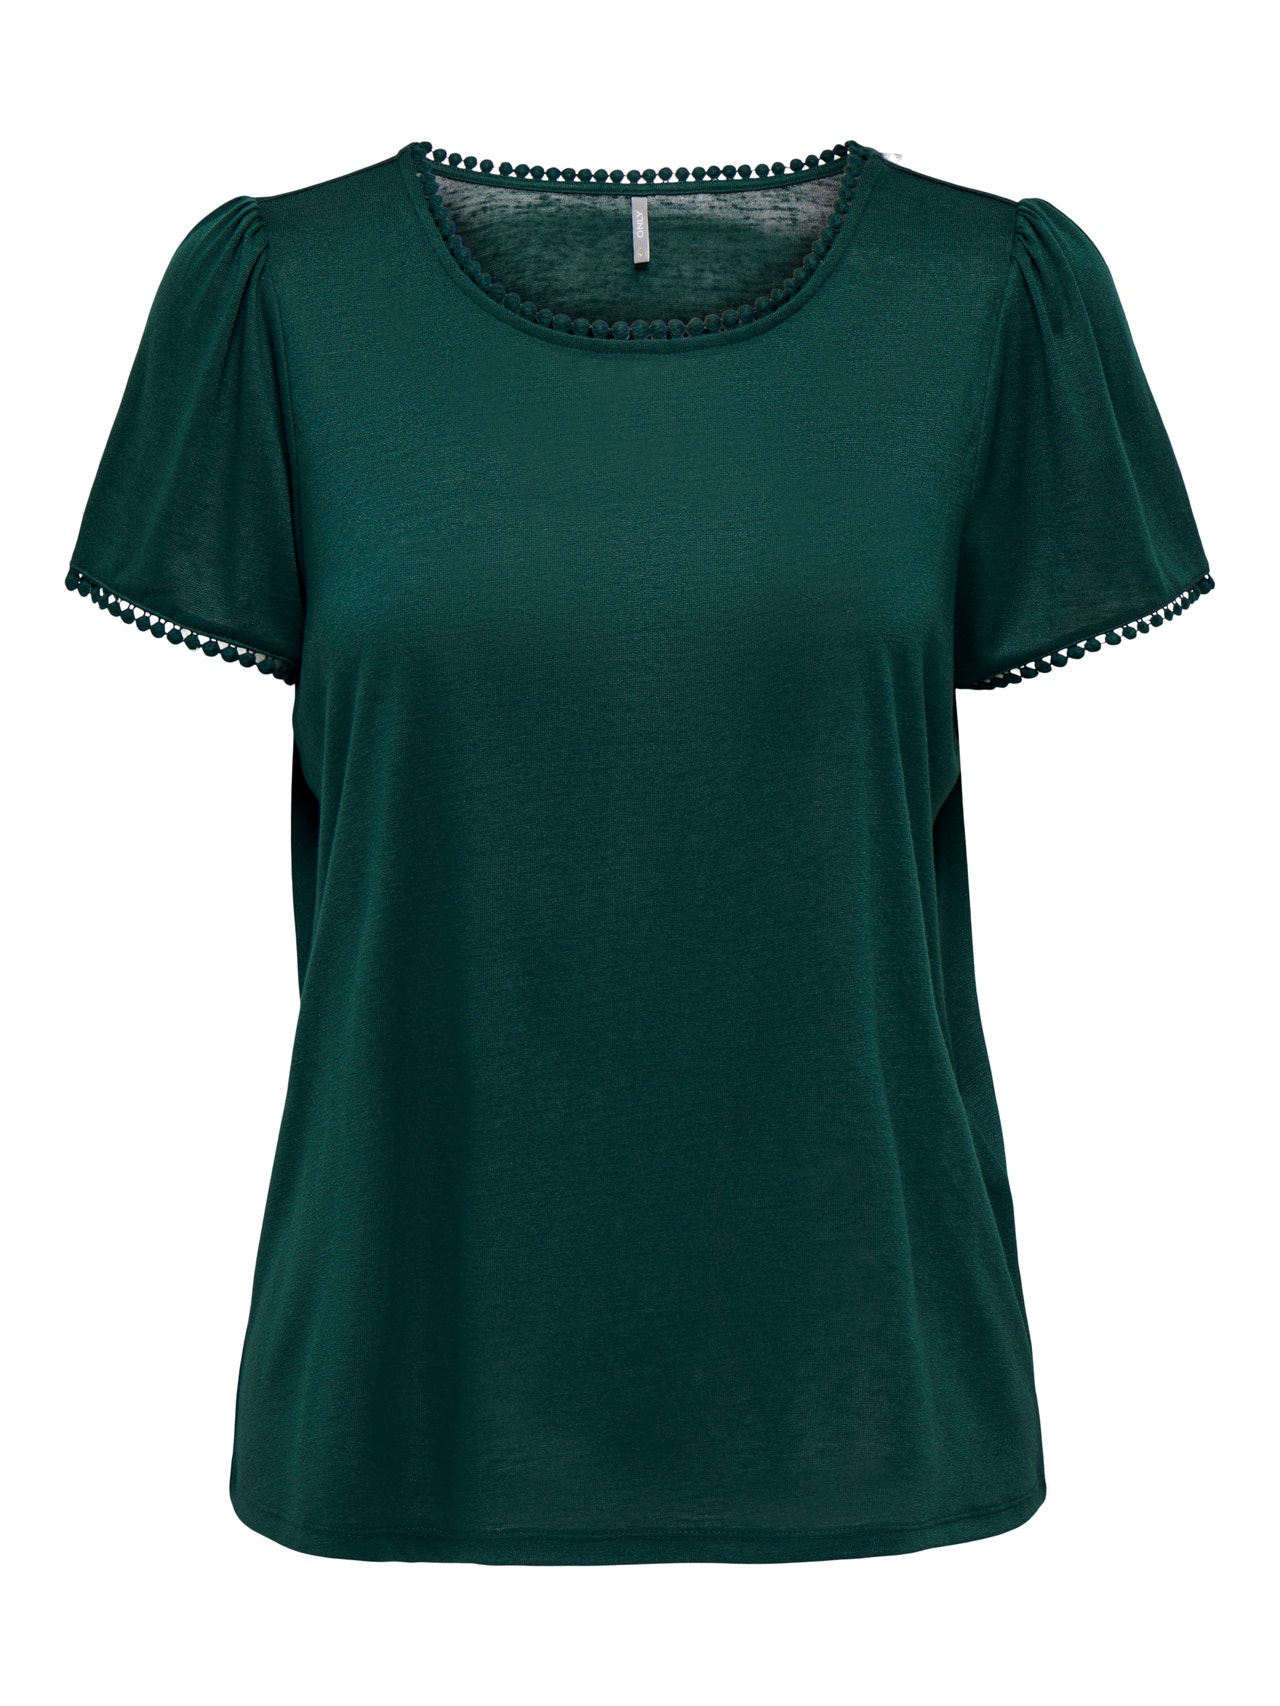 ONLY Detaljert T-skjorte -Ponderosa Pine - 15261217